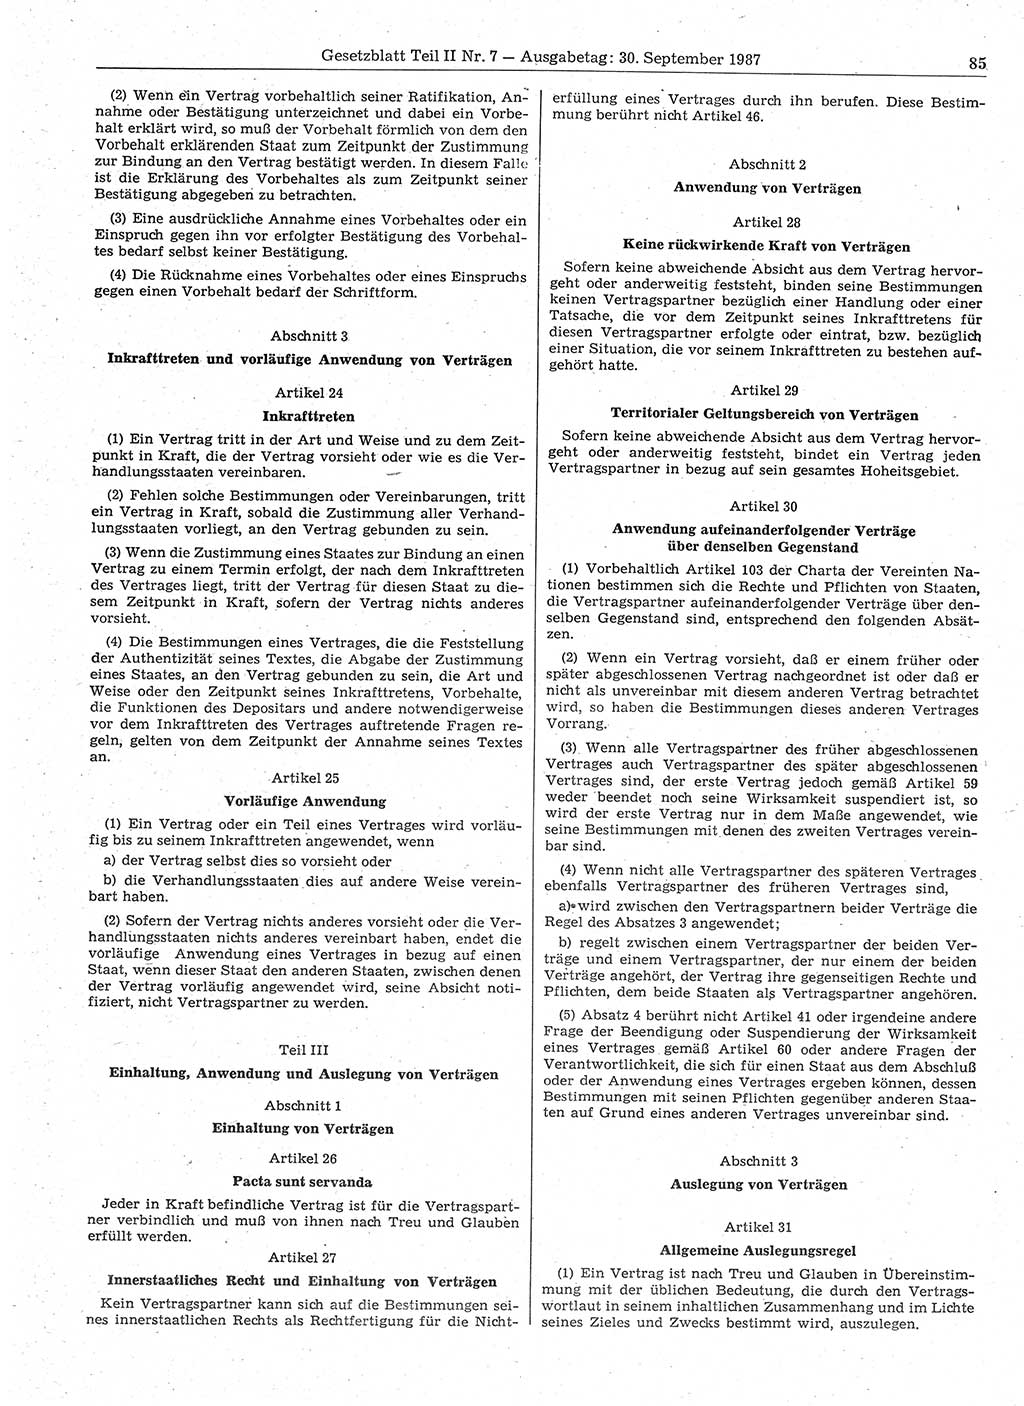 Gesetzblatt (GBl.) der Deutschen Demokratischen Republik (DDR) Teil ⅠⅠ 1987, Seite 85 (GBl. DDR ⅠⅠ 1987, S. 85)